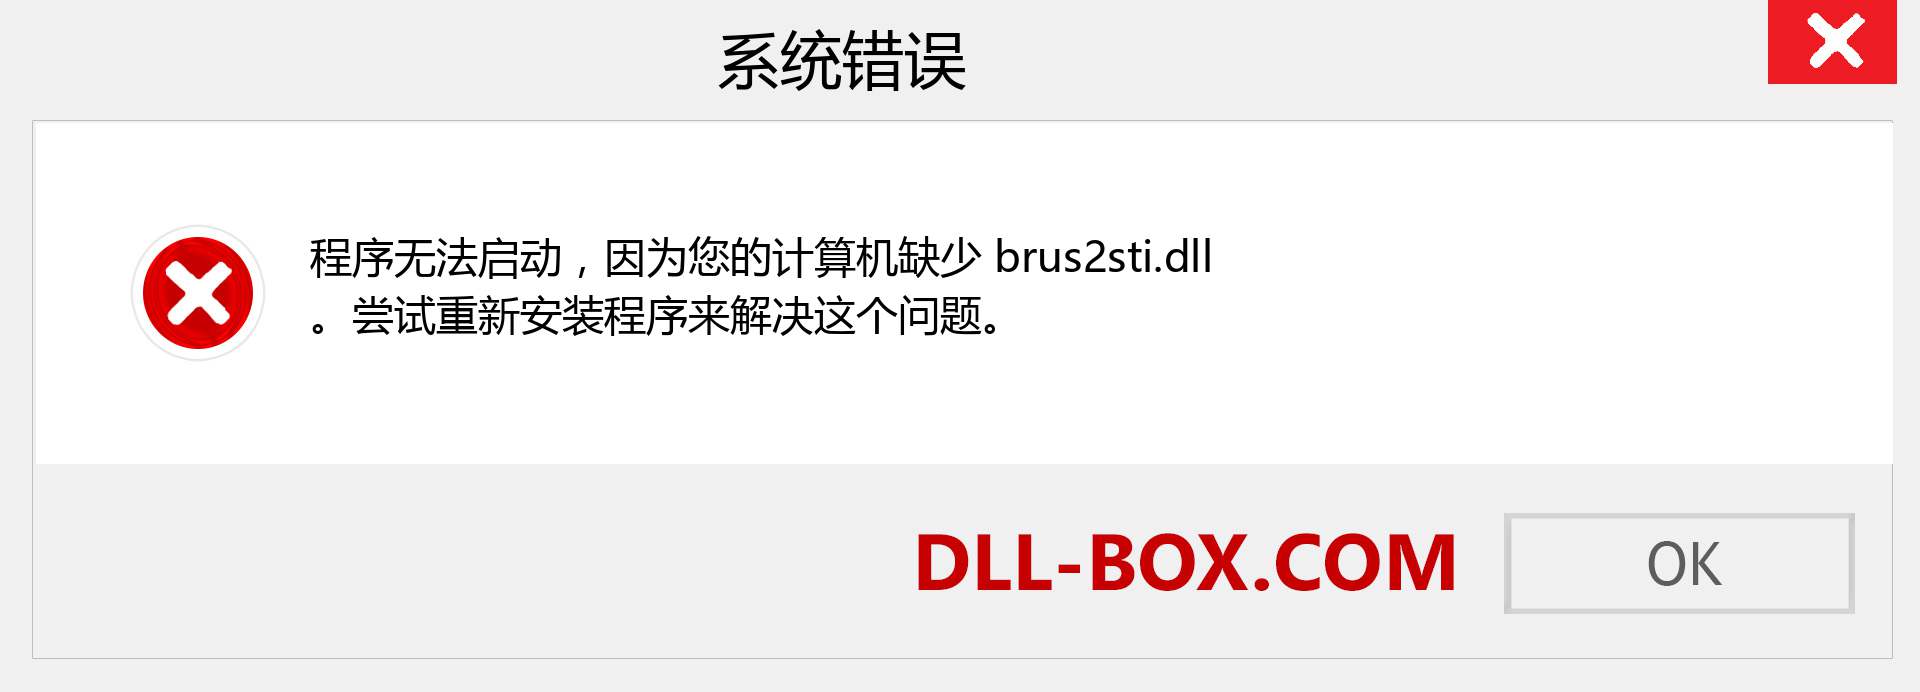 brus2sti.dll 文件丢失？。 适用于 Windows 7、8、10 的下载 - 修复 Windows、照片、图像上的 brus2sti dll 丢失错误